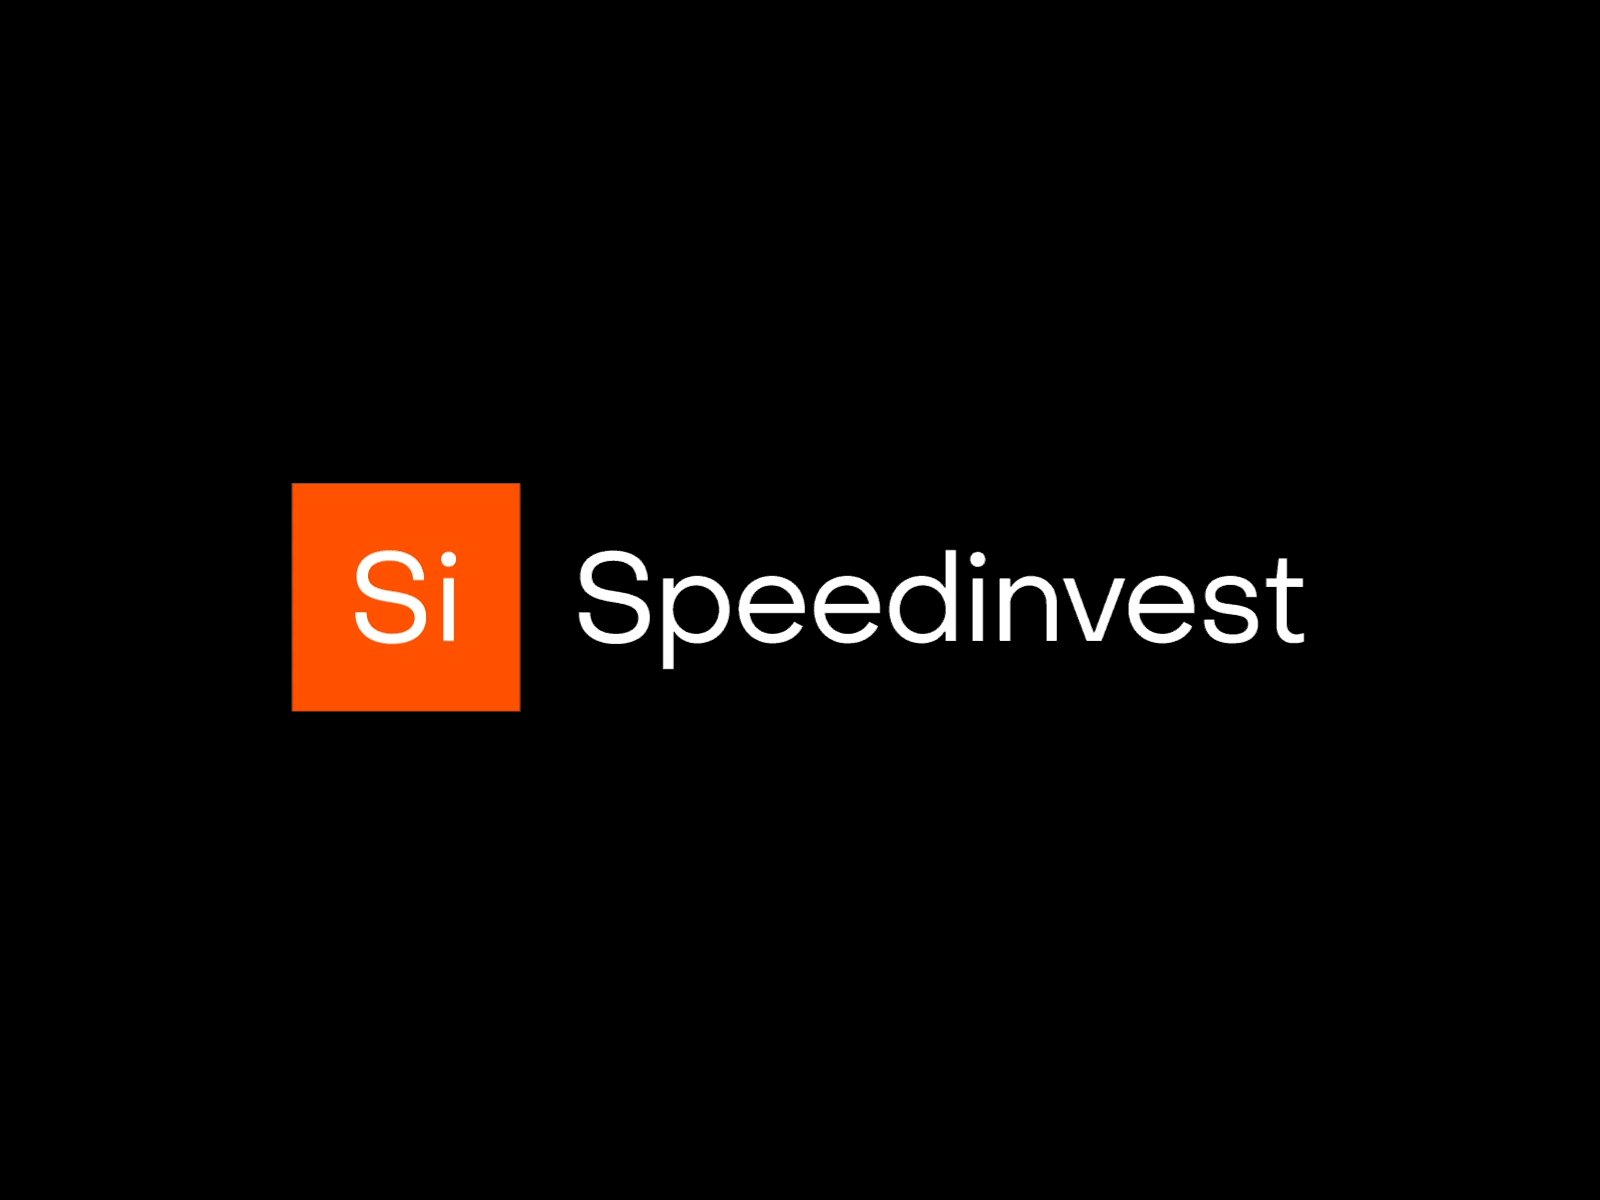 Speedinvest animation branding graphic design identity design logo logo design motion graphics